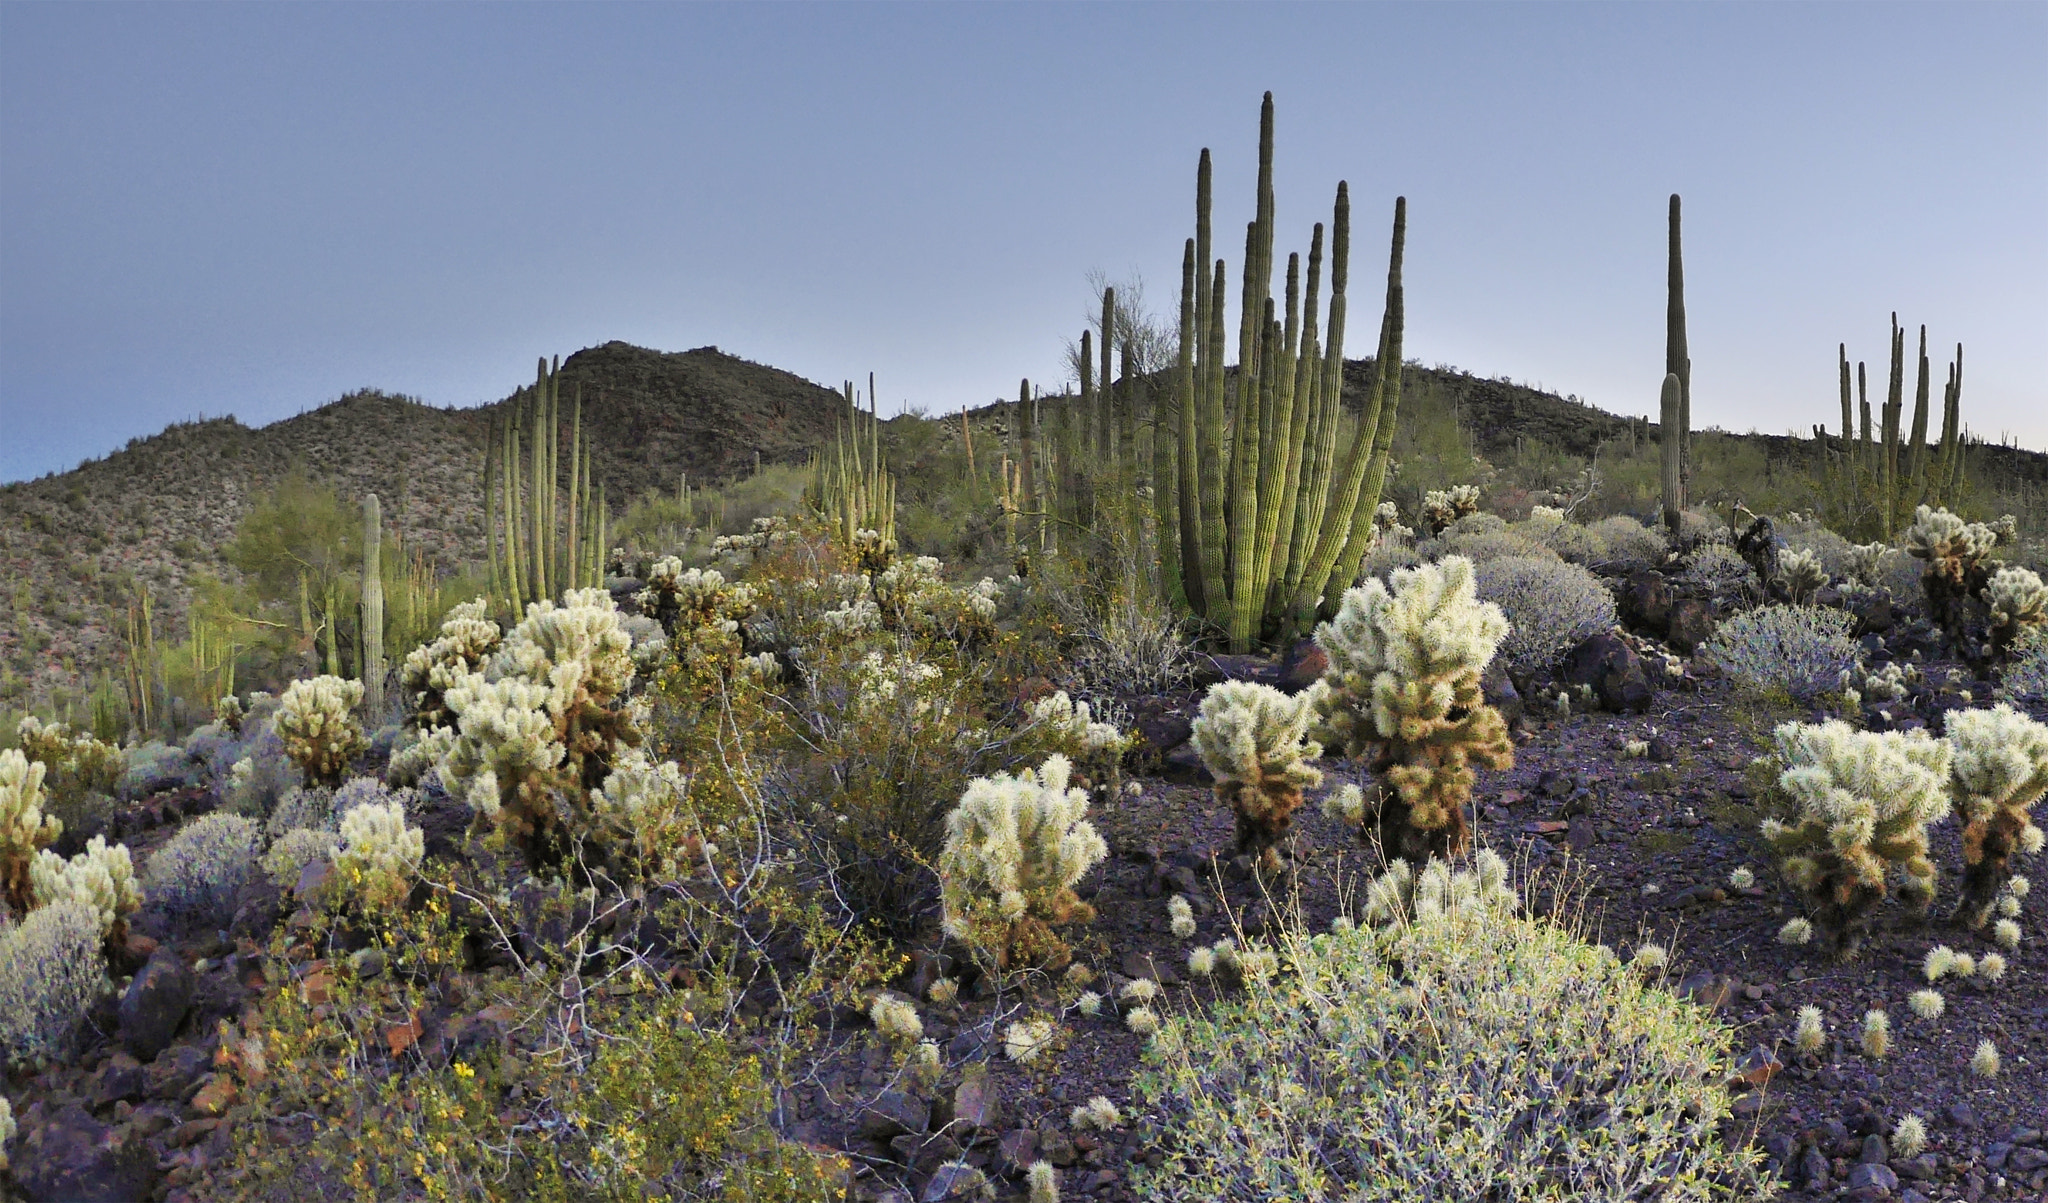 LUMIX G FISHEYE 8/F3.5 sample photo. Sonoran desert cacti photography